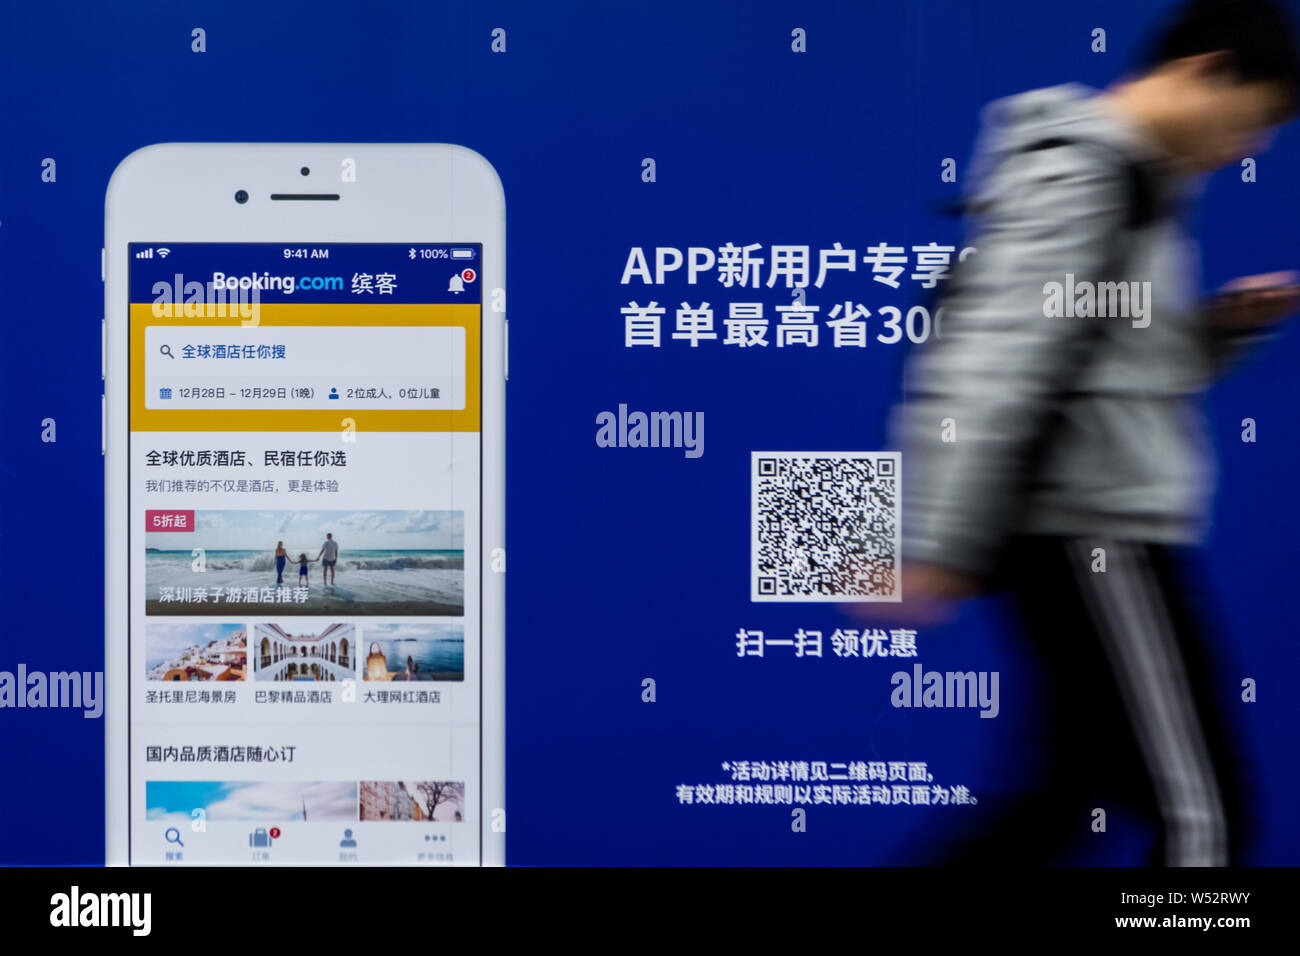 Un passager passe devant une publicité pour le site de réservation en ligne Booking.com à une station de métro à Shanghai, Chine, 29 décembre 2018. Booki Banque D'Images